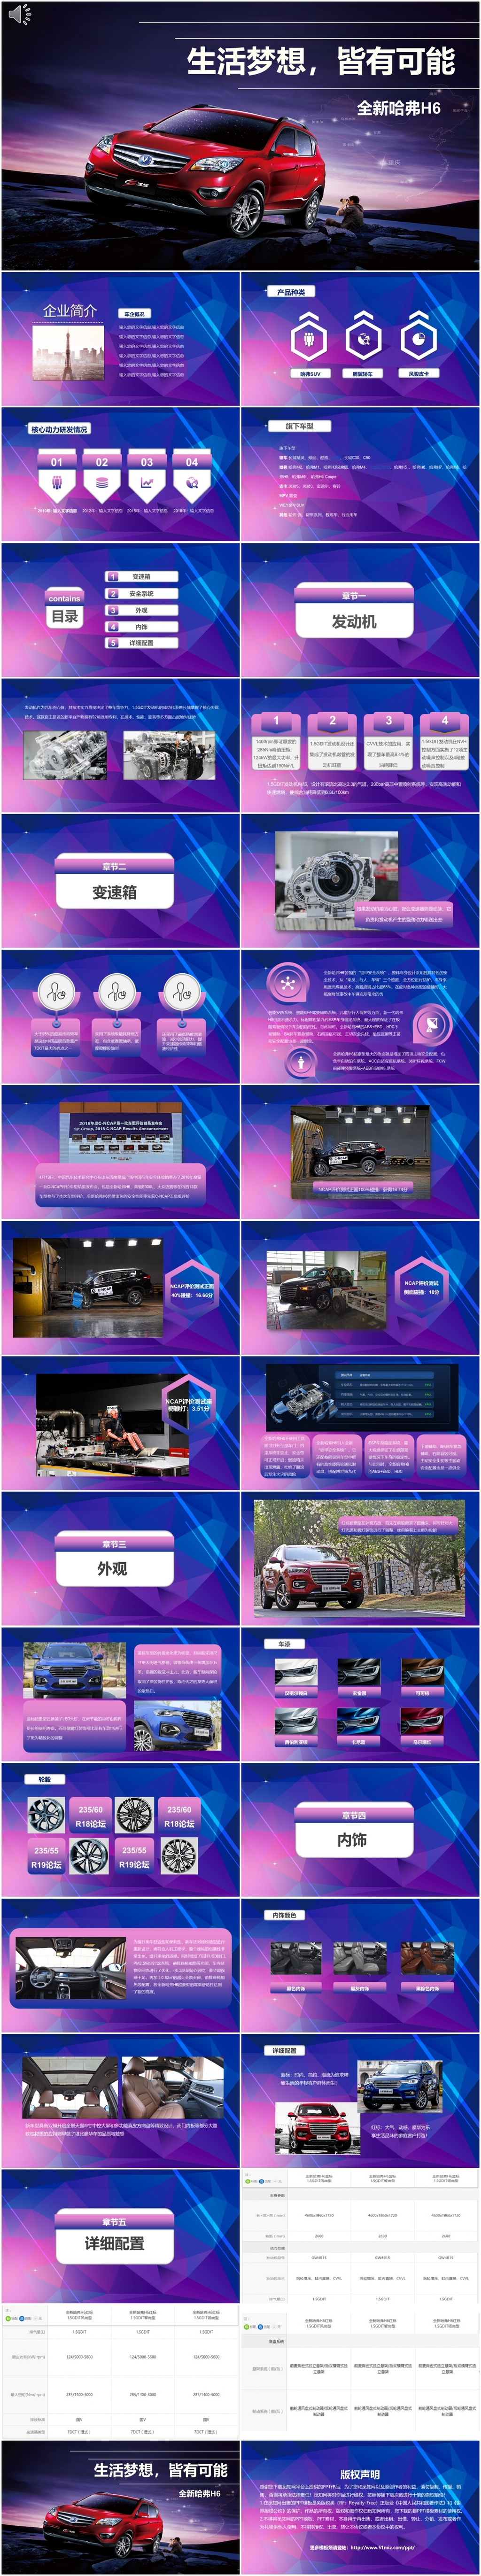 蓝紫SUV汽车介绍PPT模板